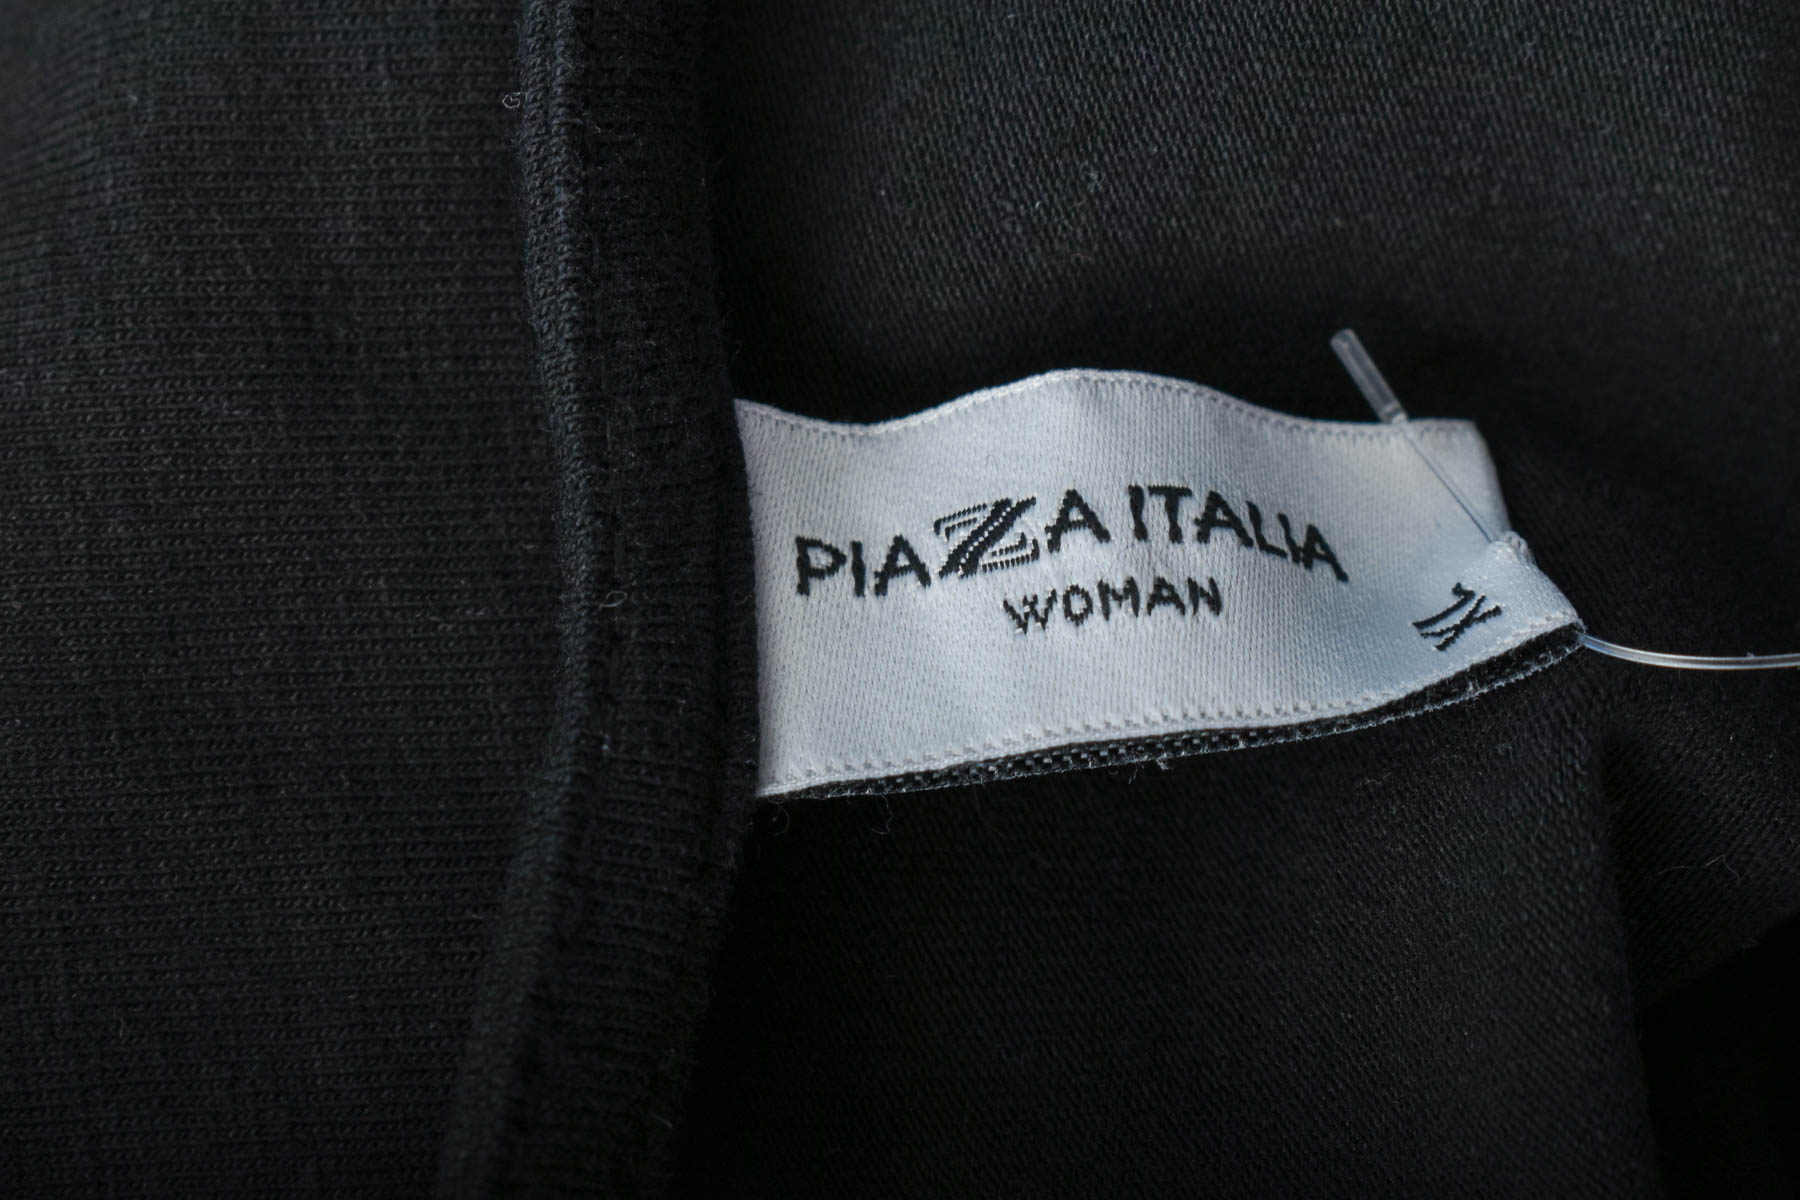 Γυναικείο μπλουζάκι - PIAZA ITALIA - 2